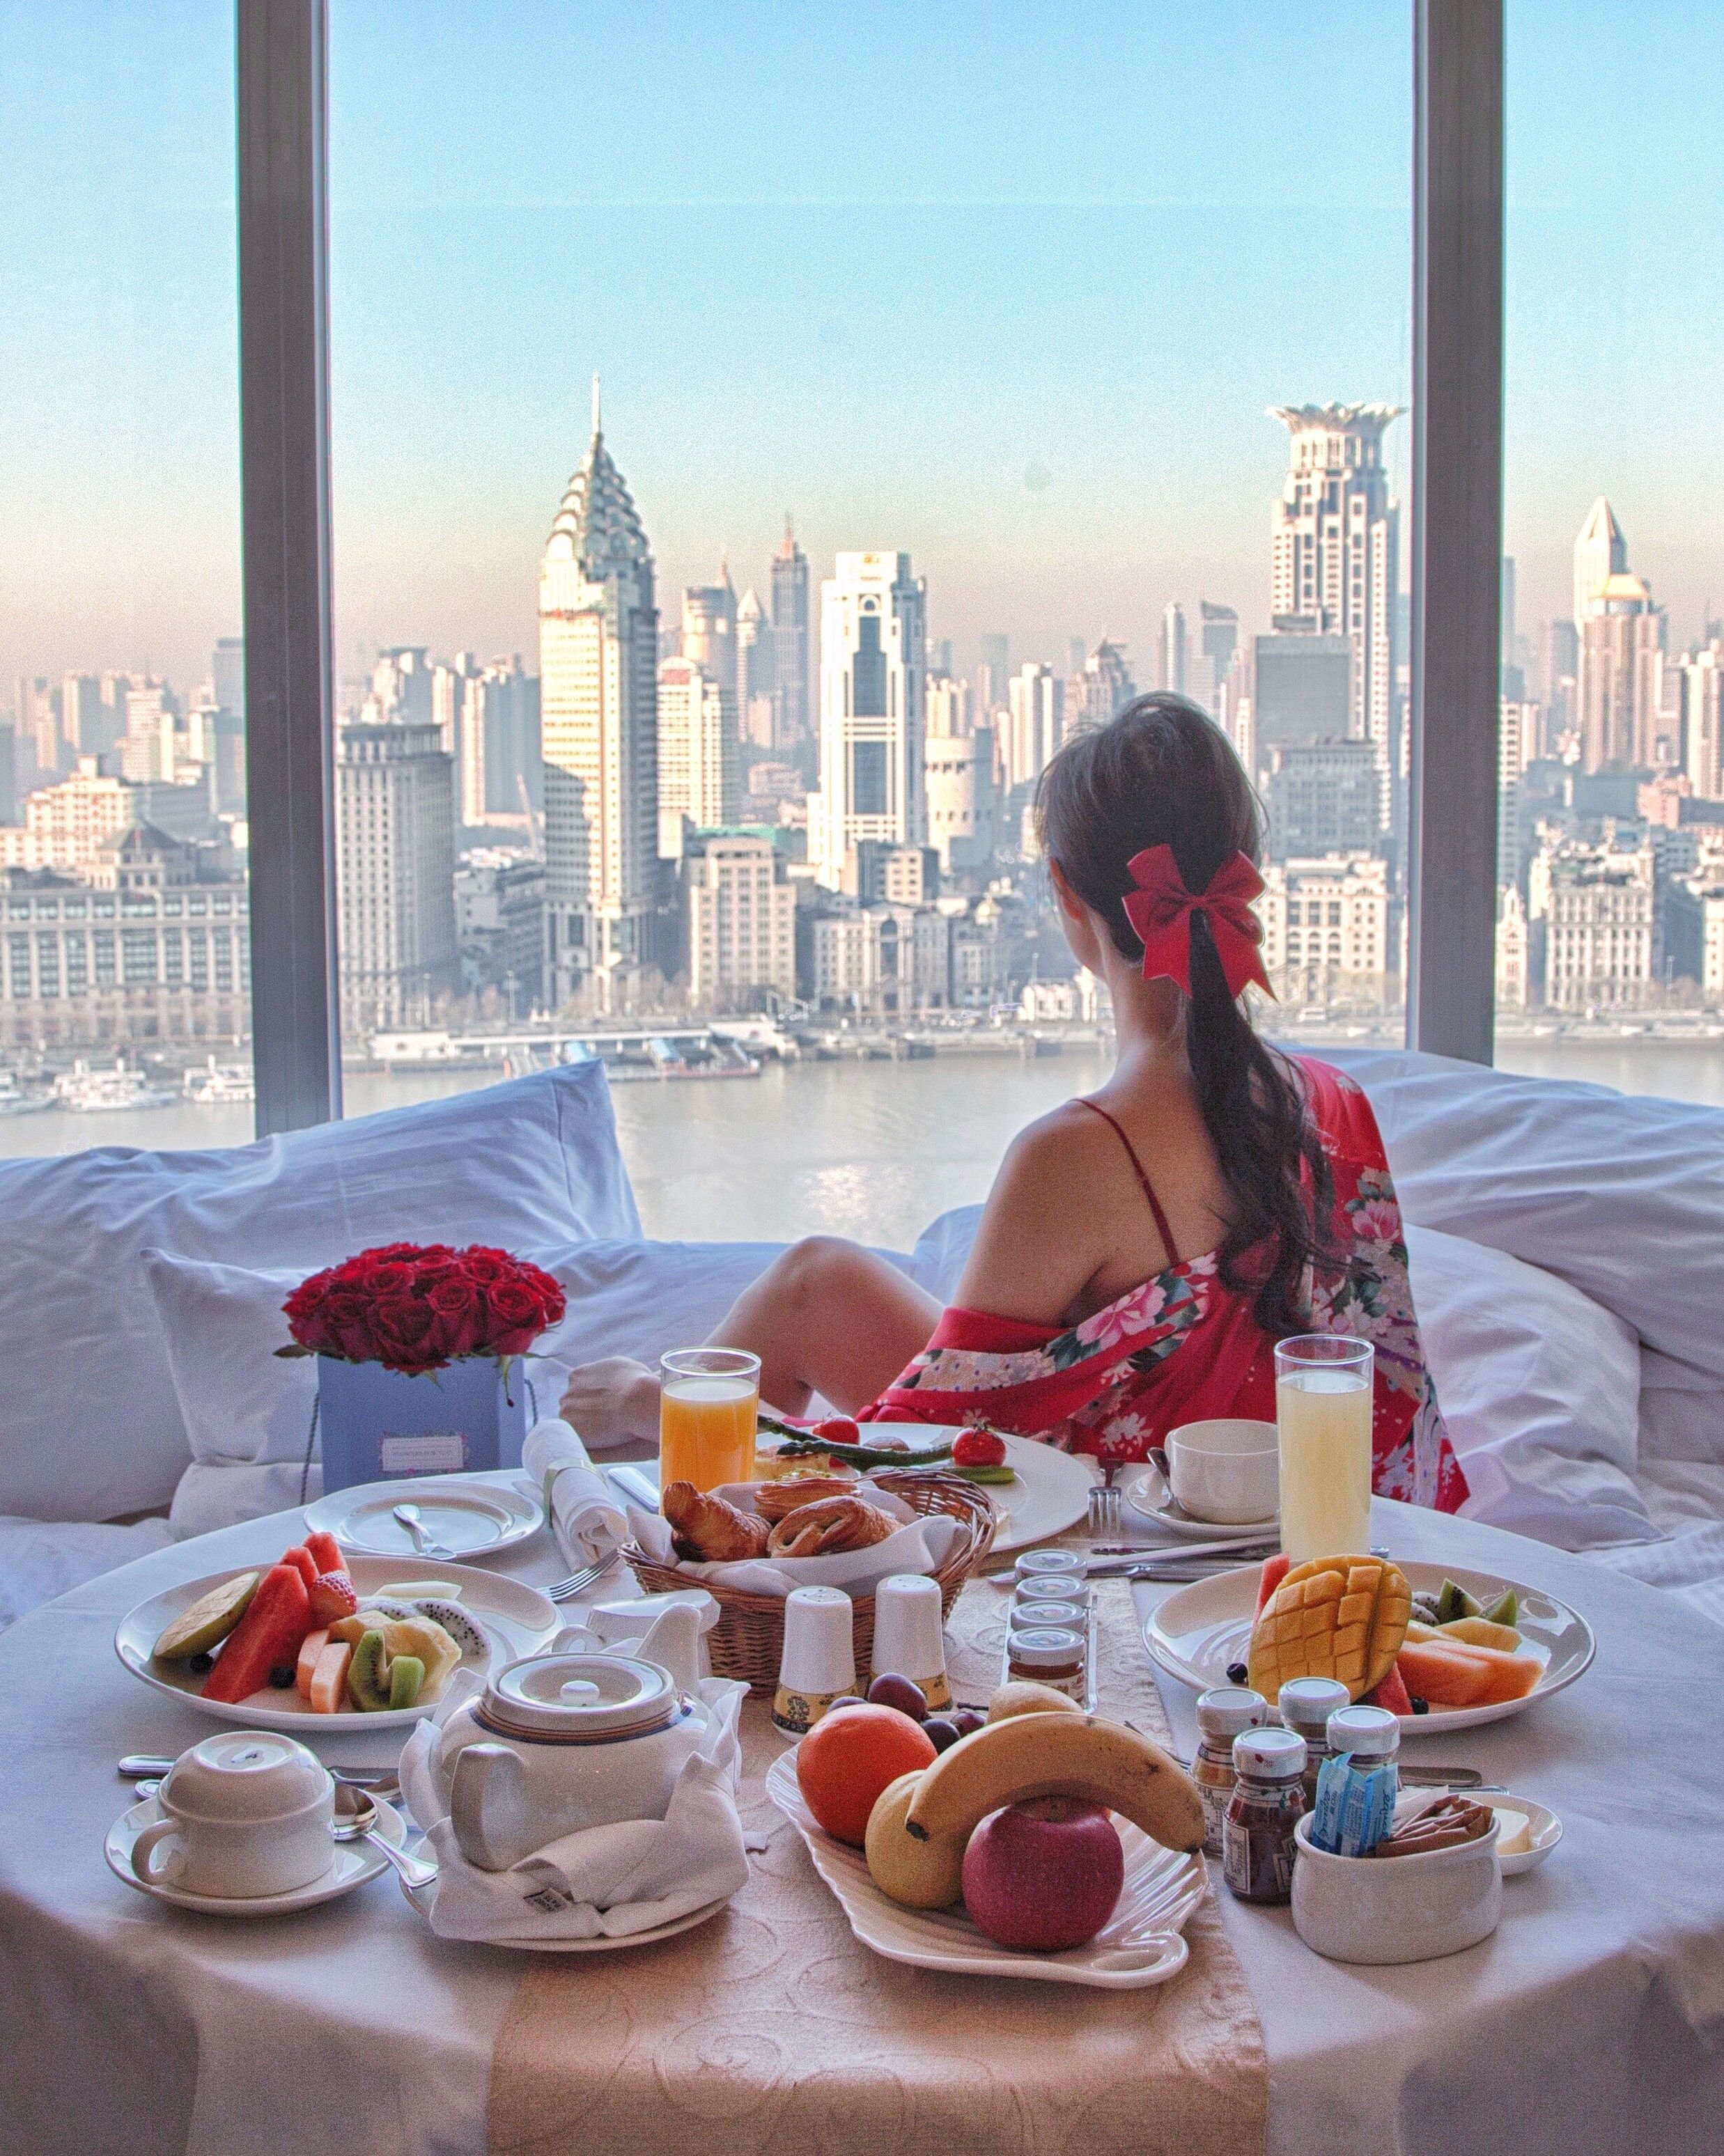 Завтрак в дубае. Красивый завтрак в отеле. Завтрак с девушкой в отеле. Девушка в отеле завтракает. Завтрак в дорогом отеле.